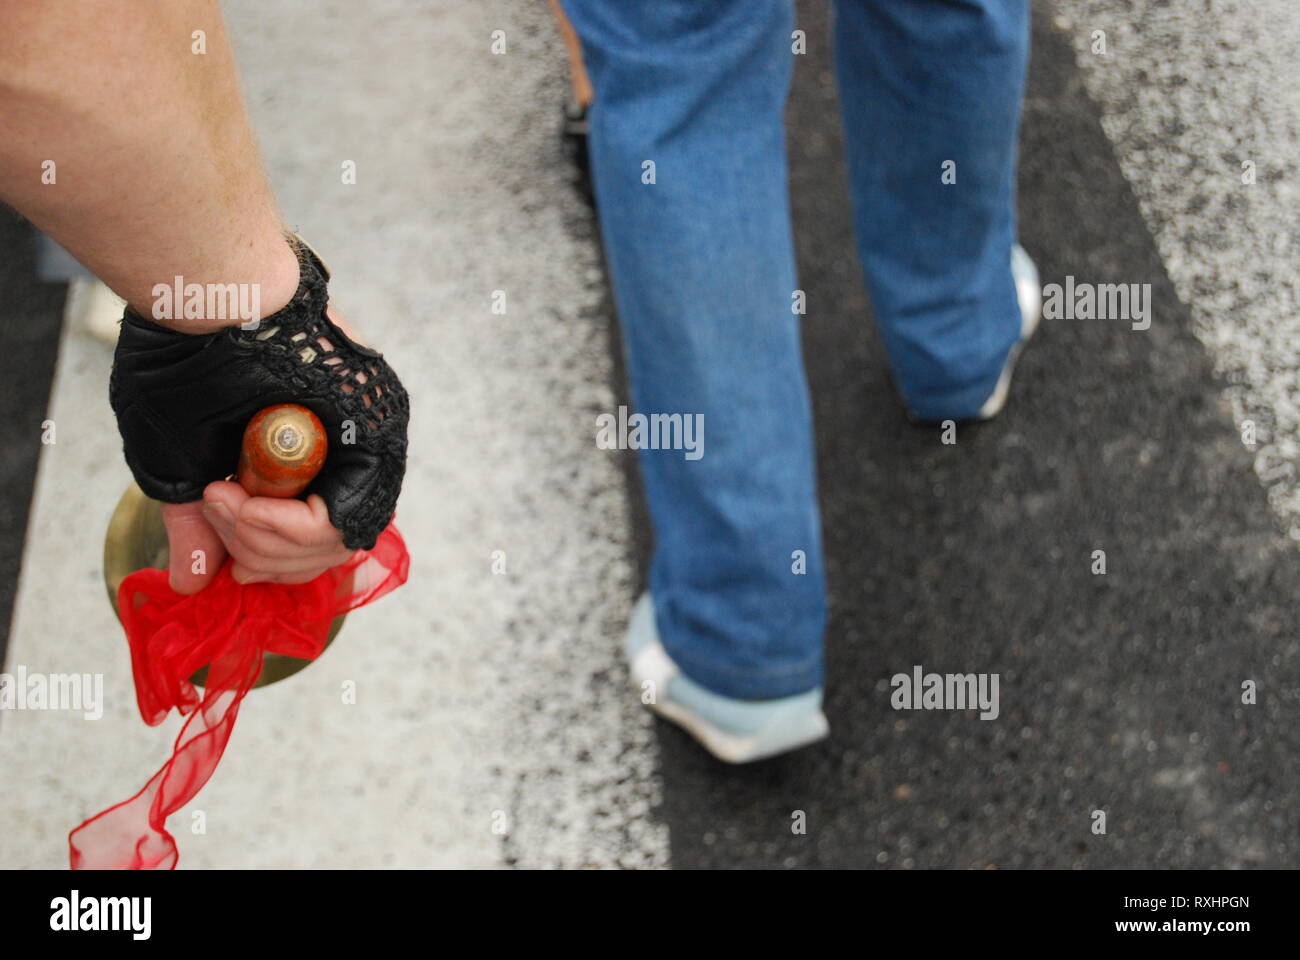 Politischer Protest, öffentliche Vorführung oder Streik in Stadt Straße. Aktivismus, der Zivilgesellschaft. Männliche Hand in schwarz Handschuh Holding eine Glocke, Beine Demonstrator. Stockfoto